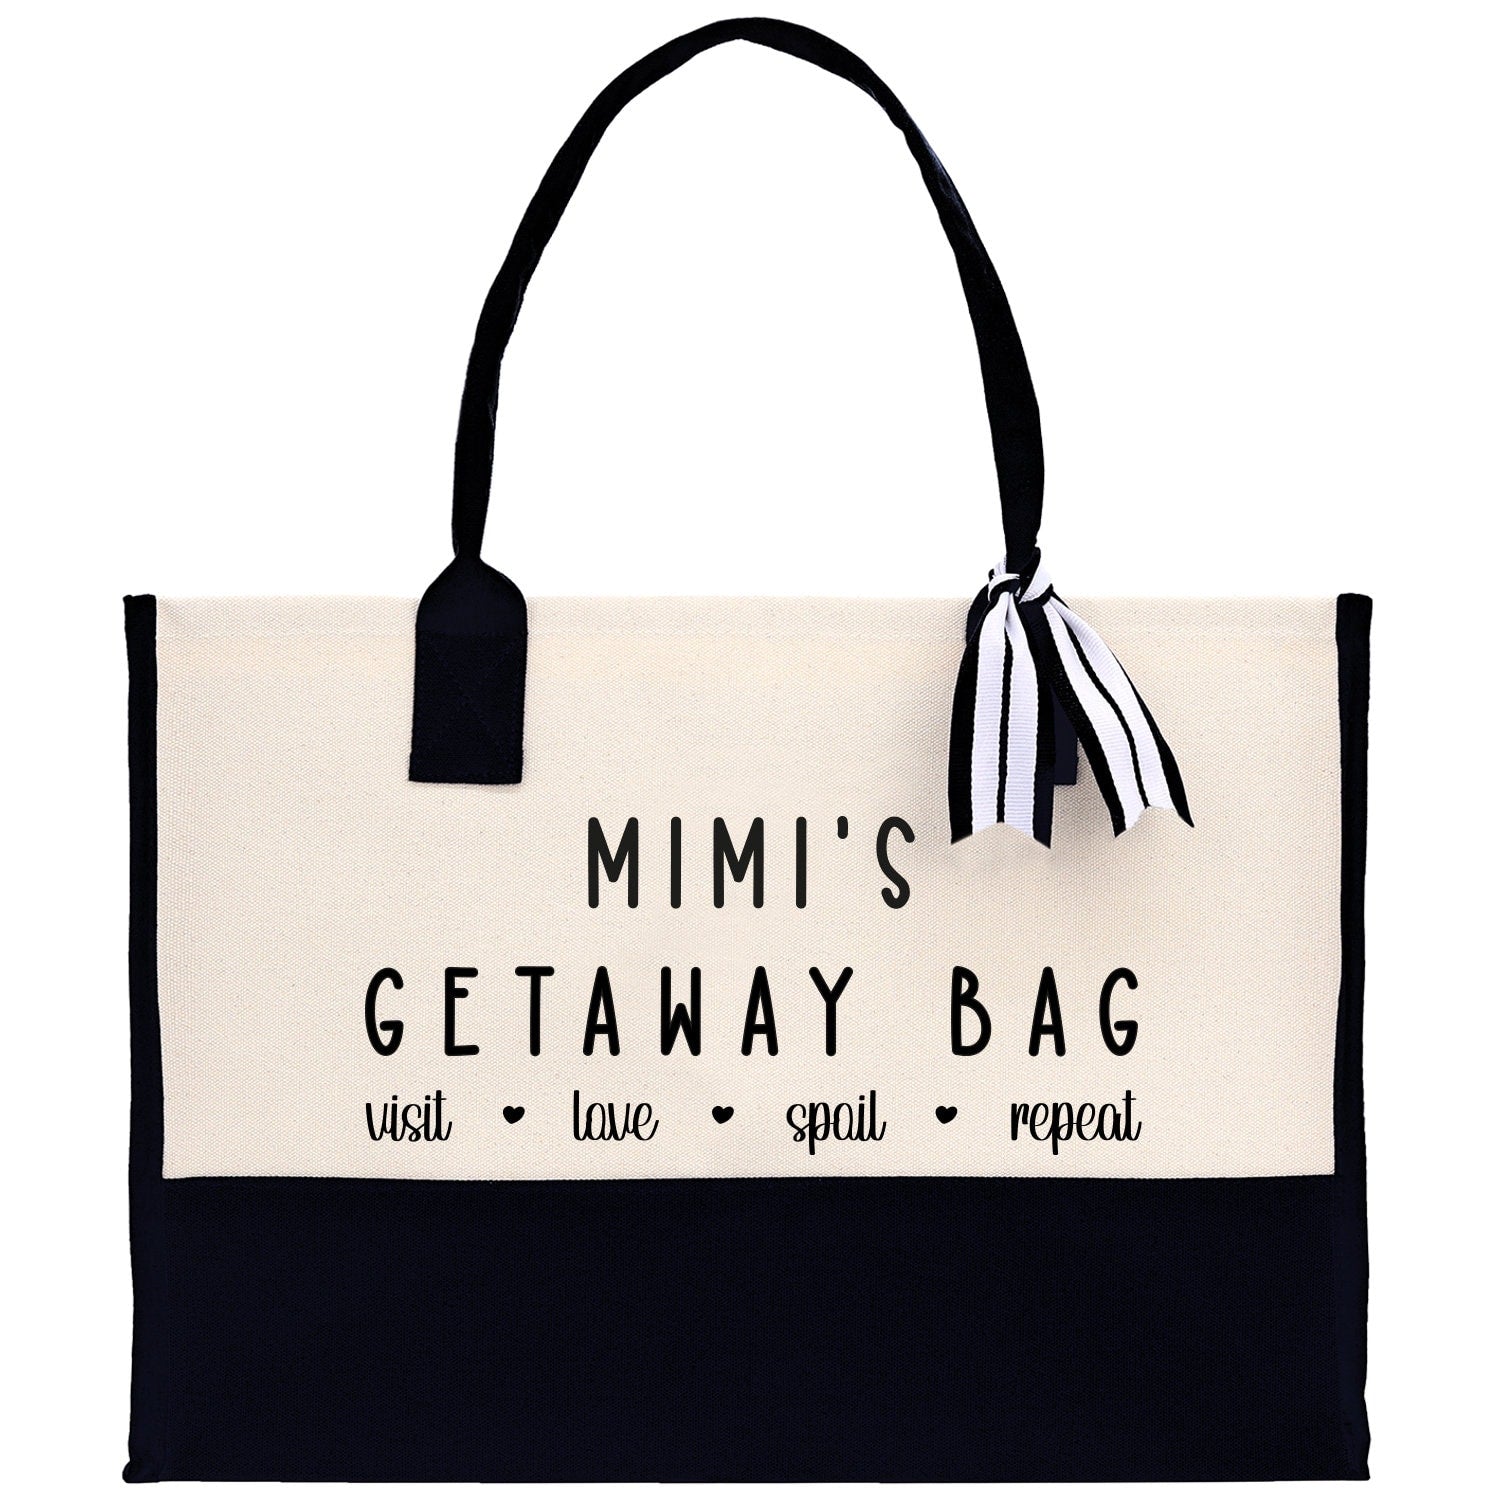 Grandma Tote Bag Grandma's Getaway Bag Grandma Mimi Bag Grandma Gift Bag Shopping Bag Mothers Day Gift Live Love Spoil Bag Grandma GM1011